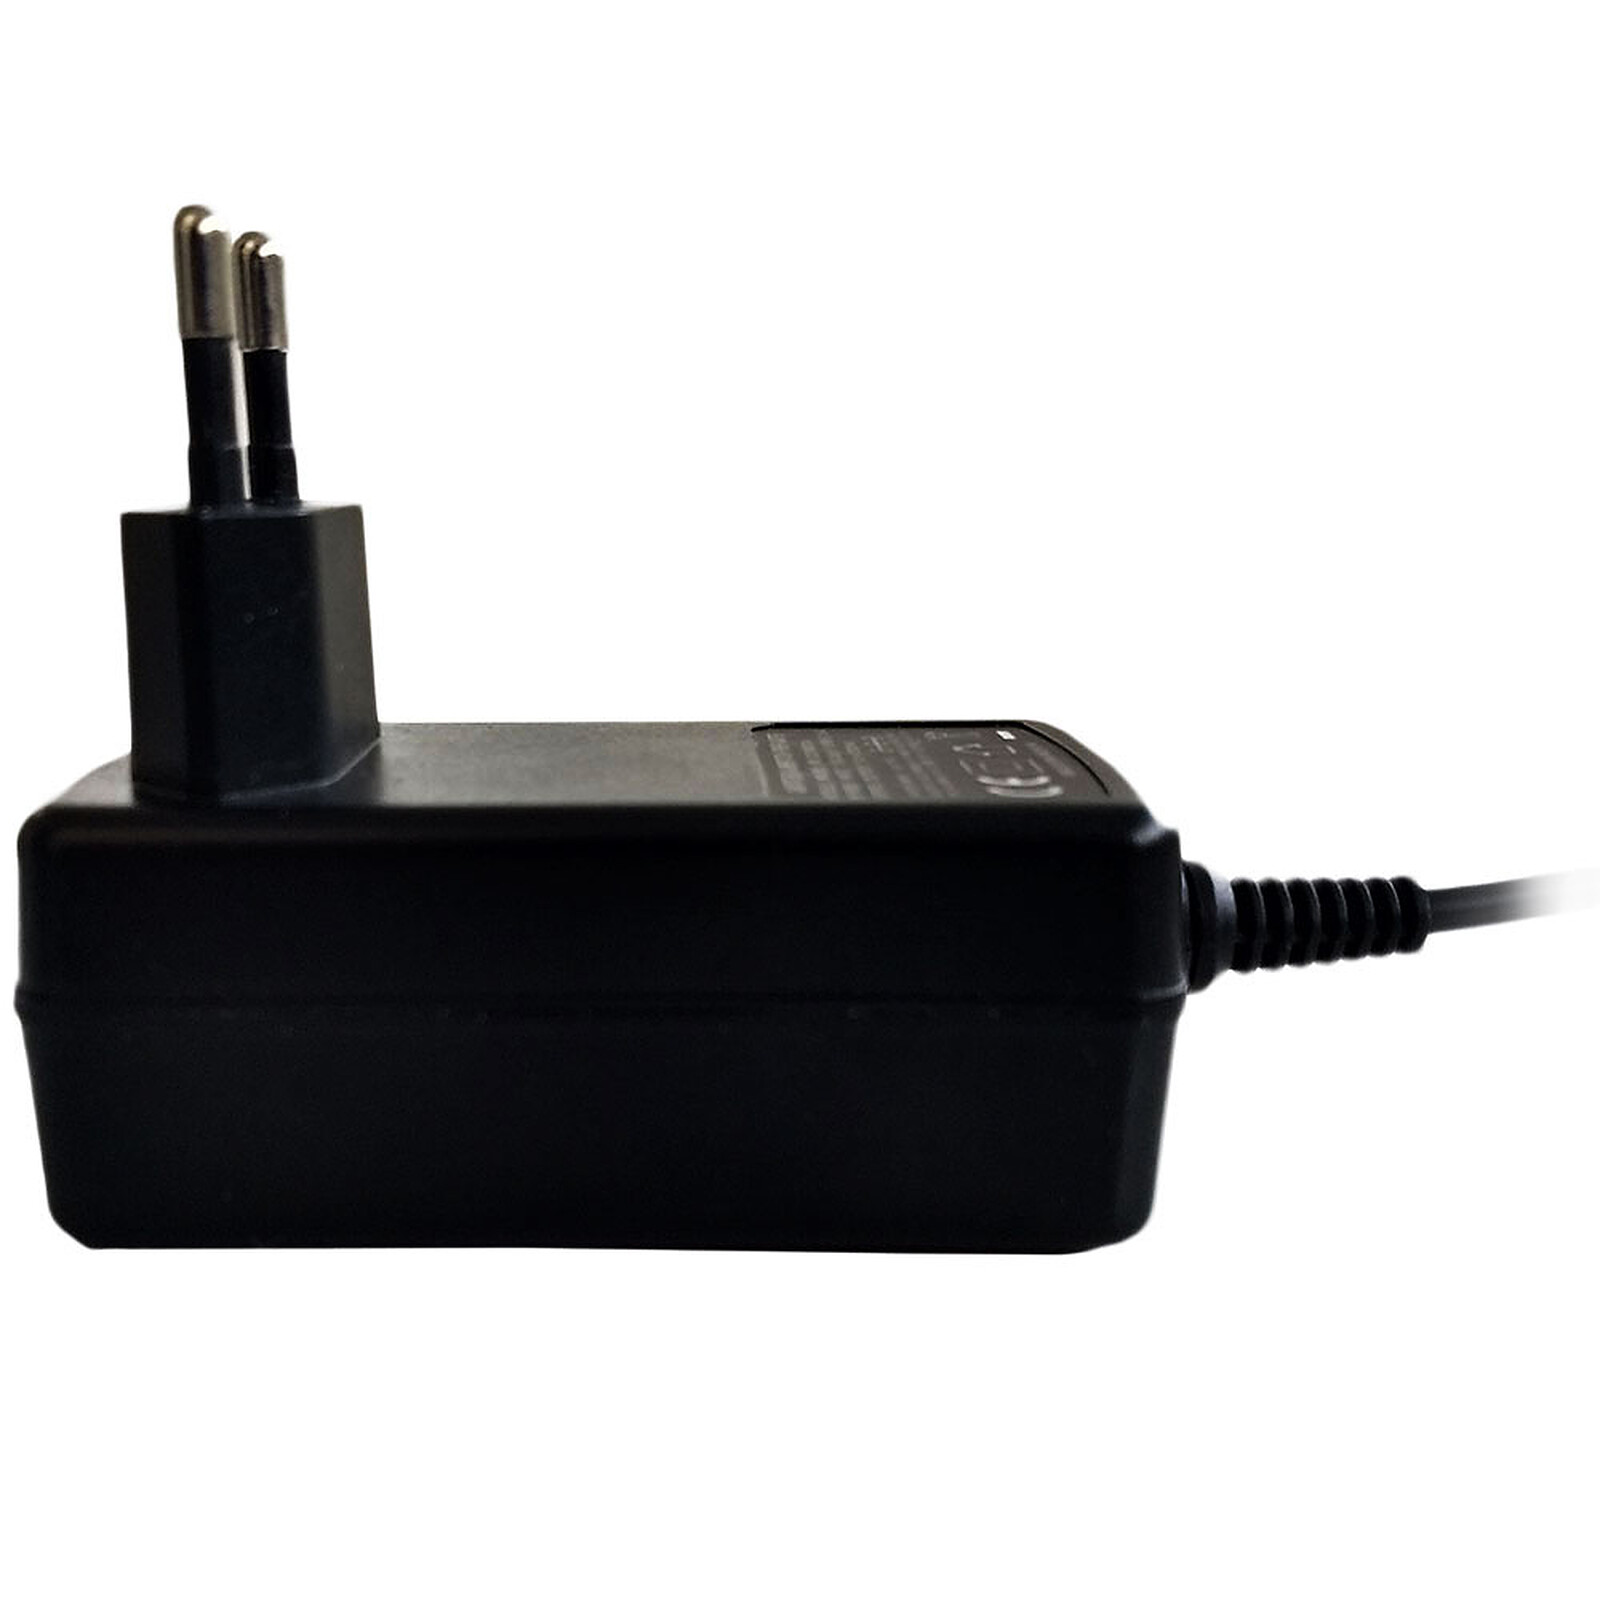 Heden Chargeur automatique universel et multifonctions (120W) - Chargeur PC  portable - Garantie 3 ans LDLC